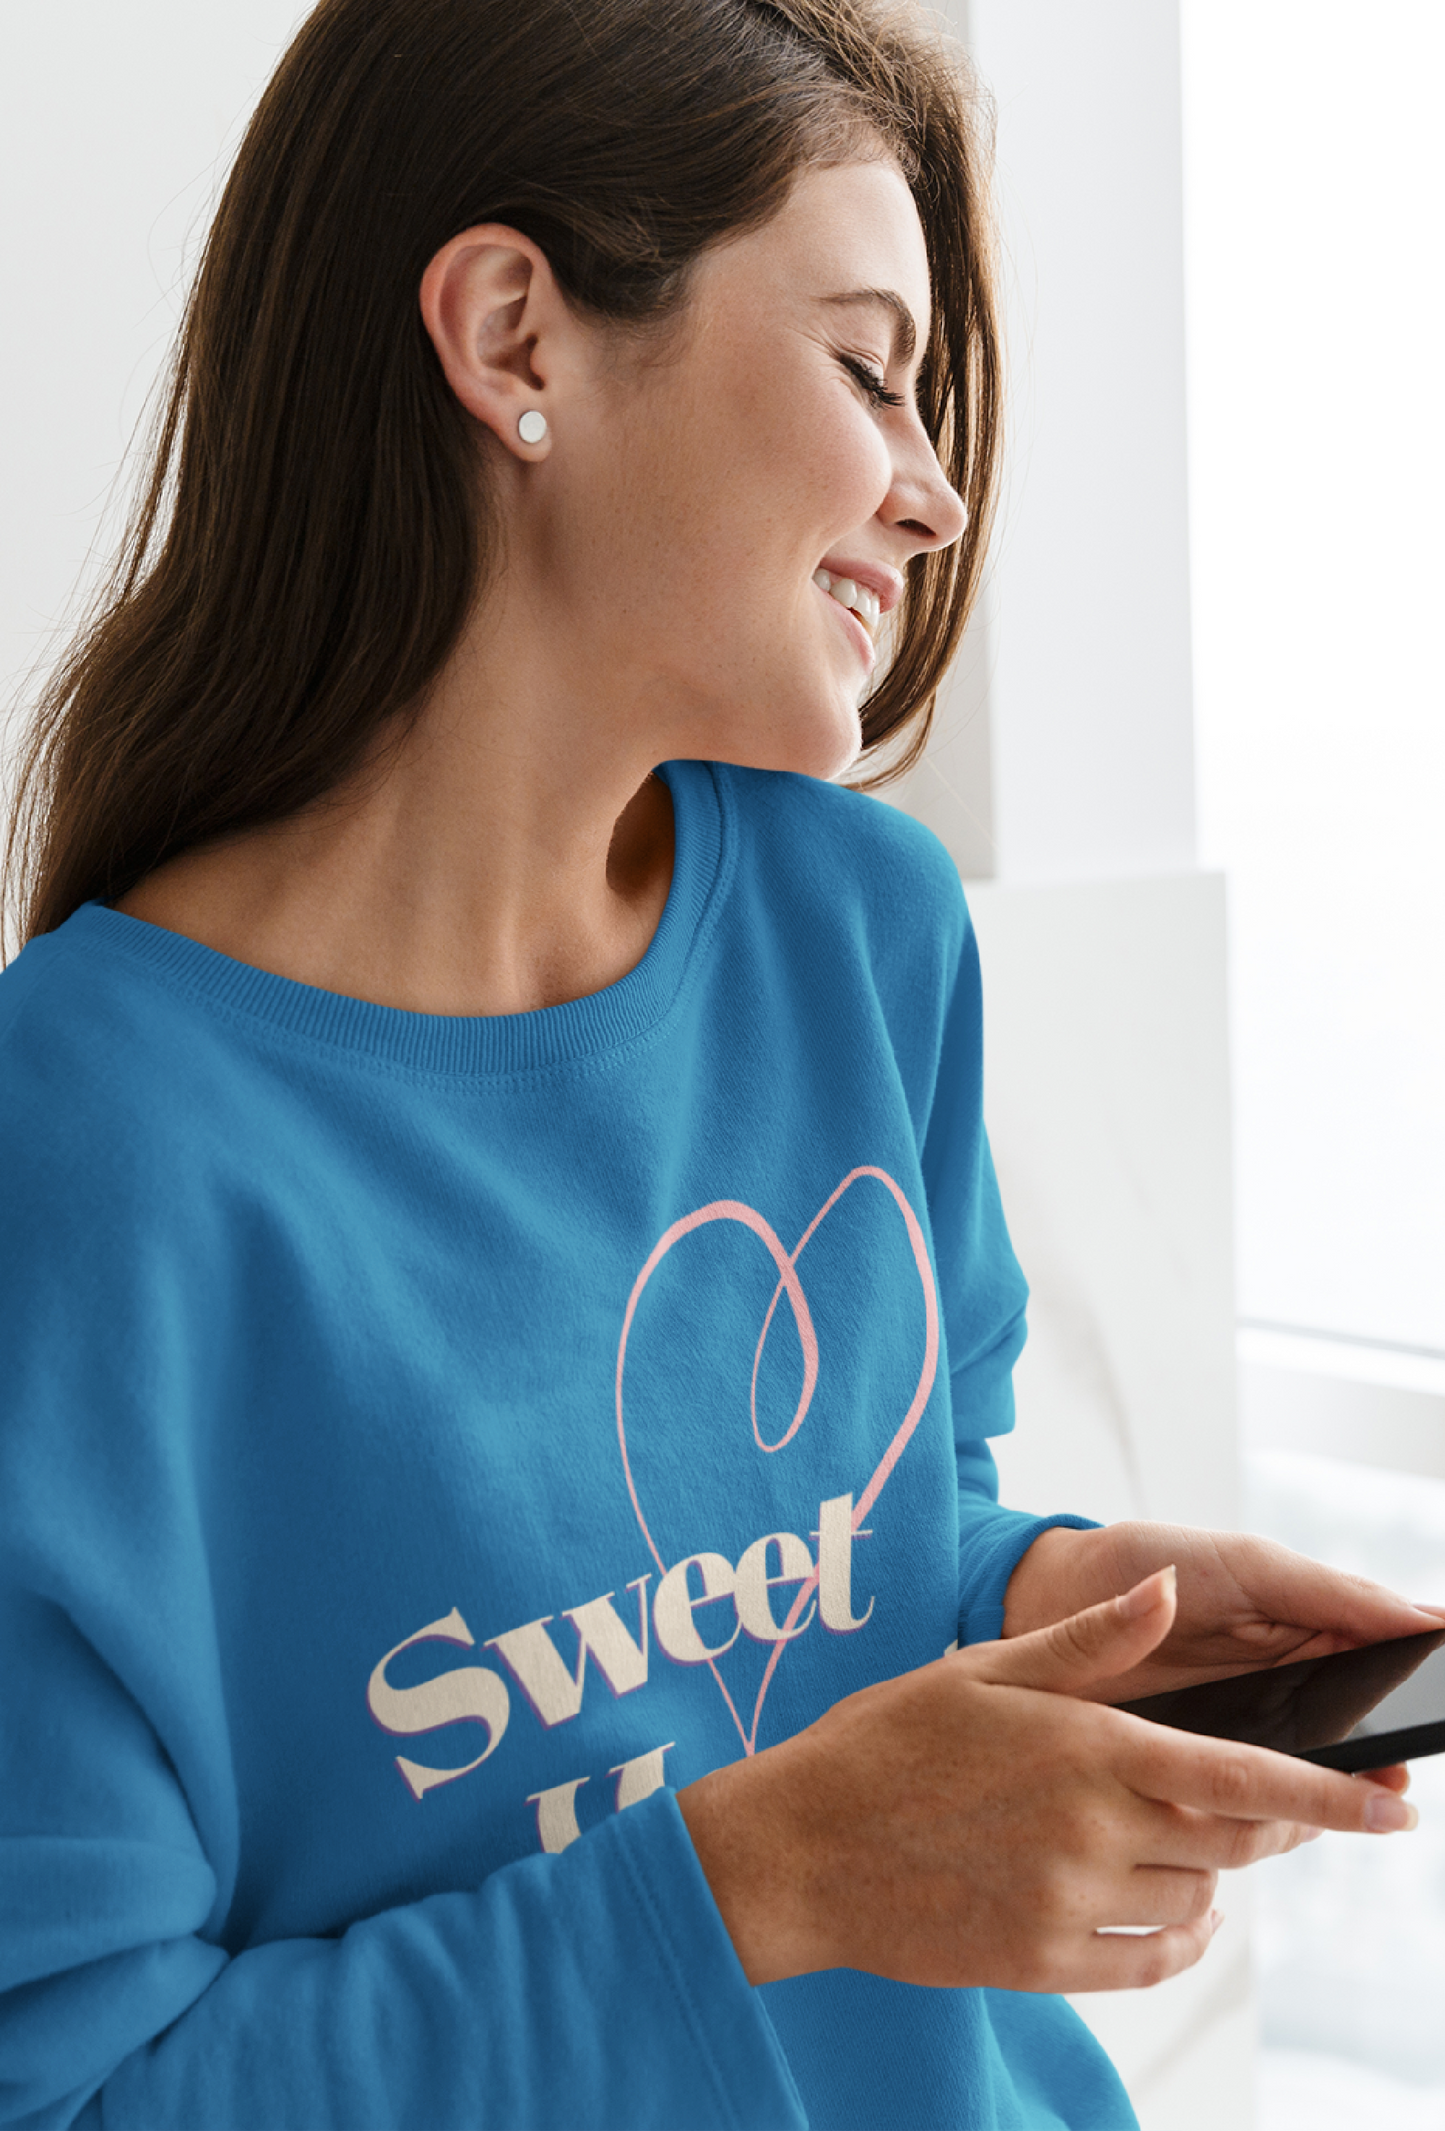 Best Seller Bestfriend Shirt Sweetheart Sweater Inspirational Positive Quote Shirt For Women